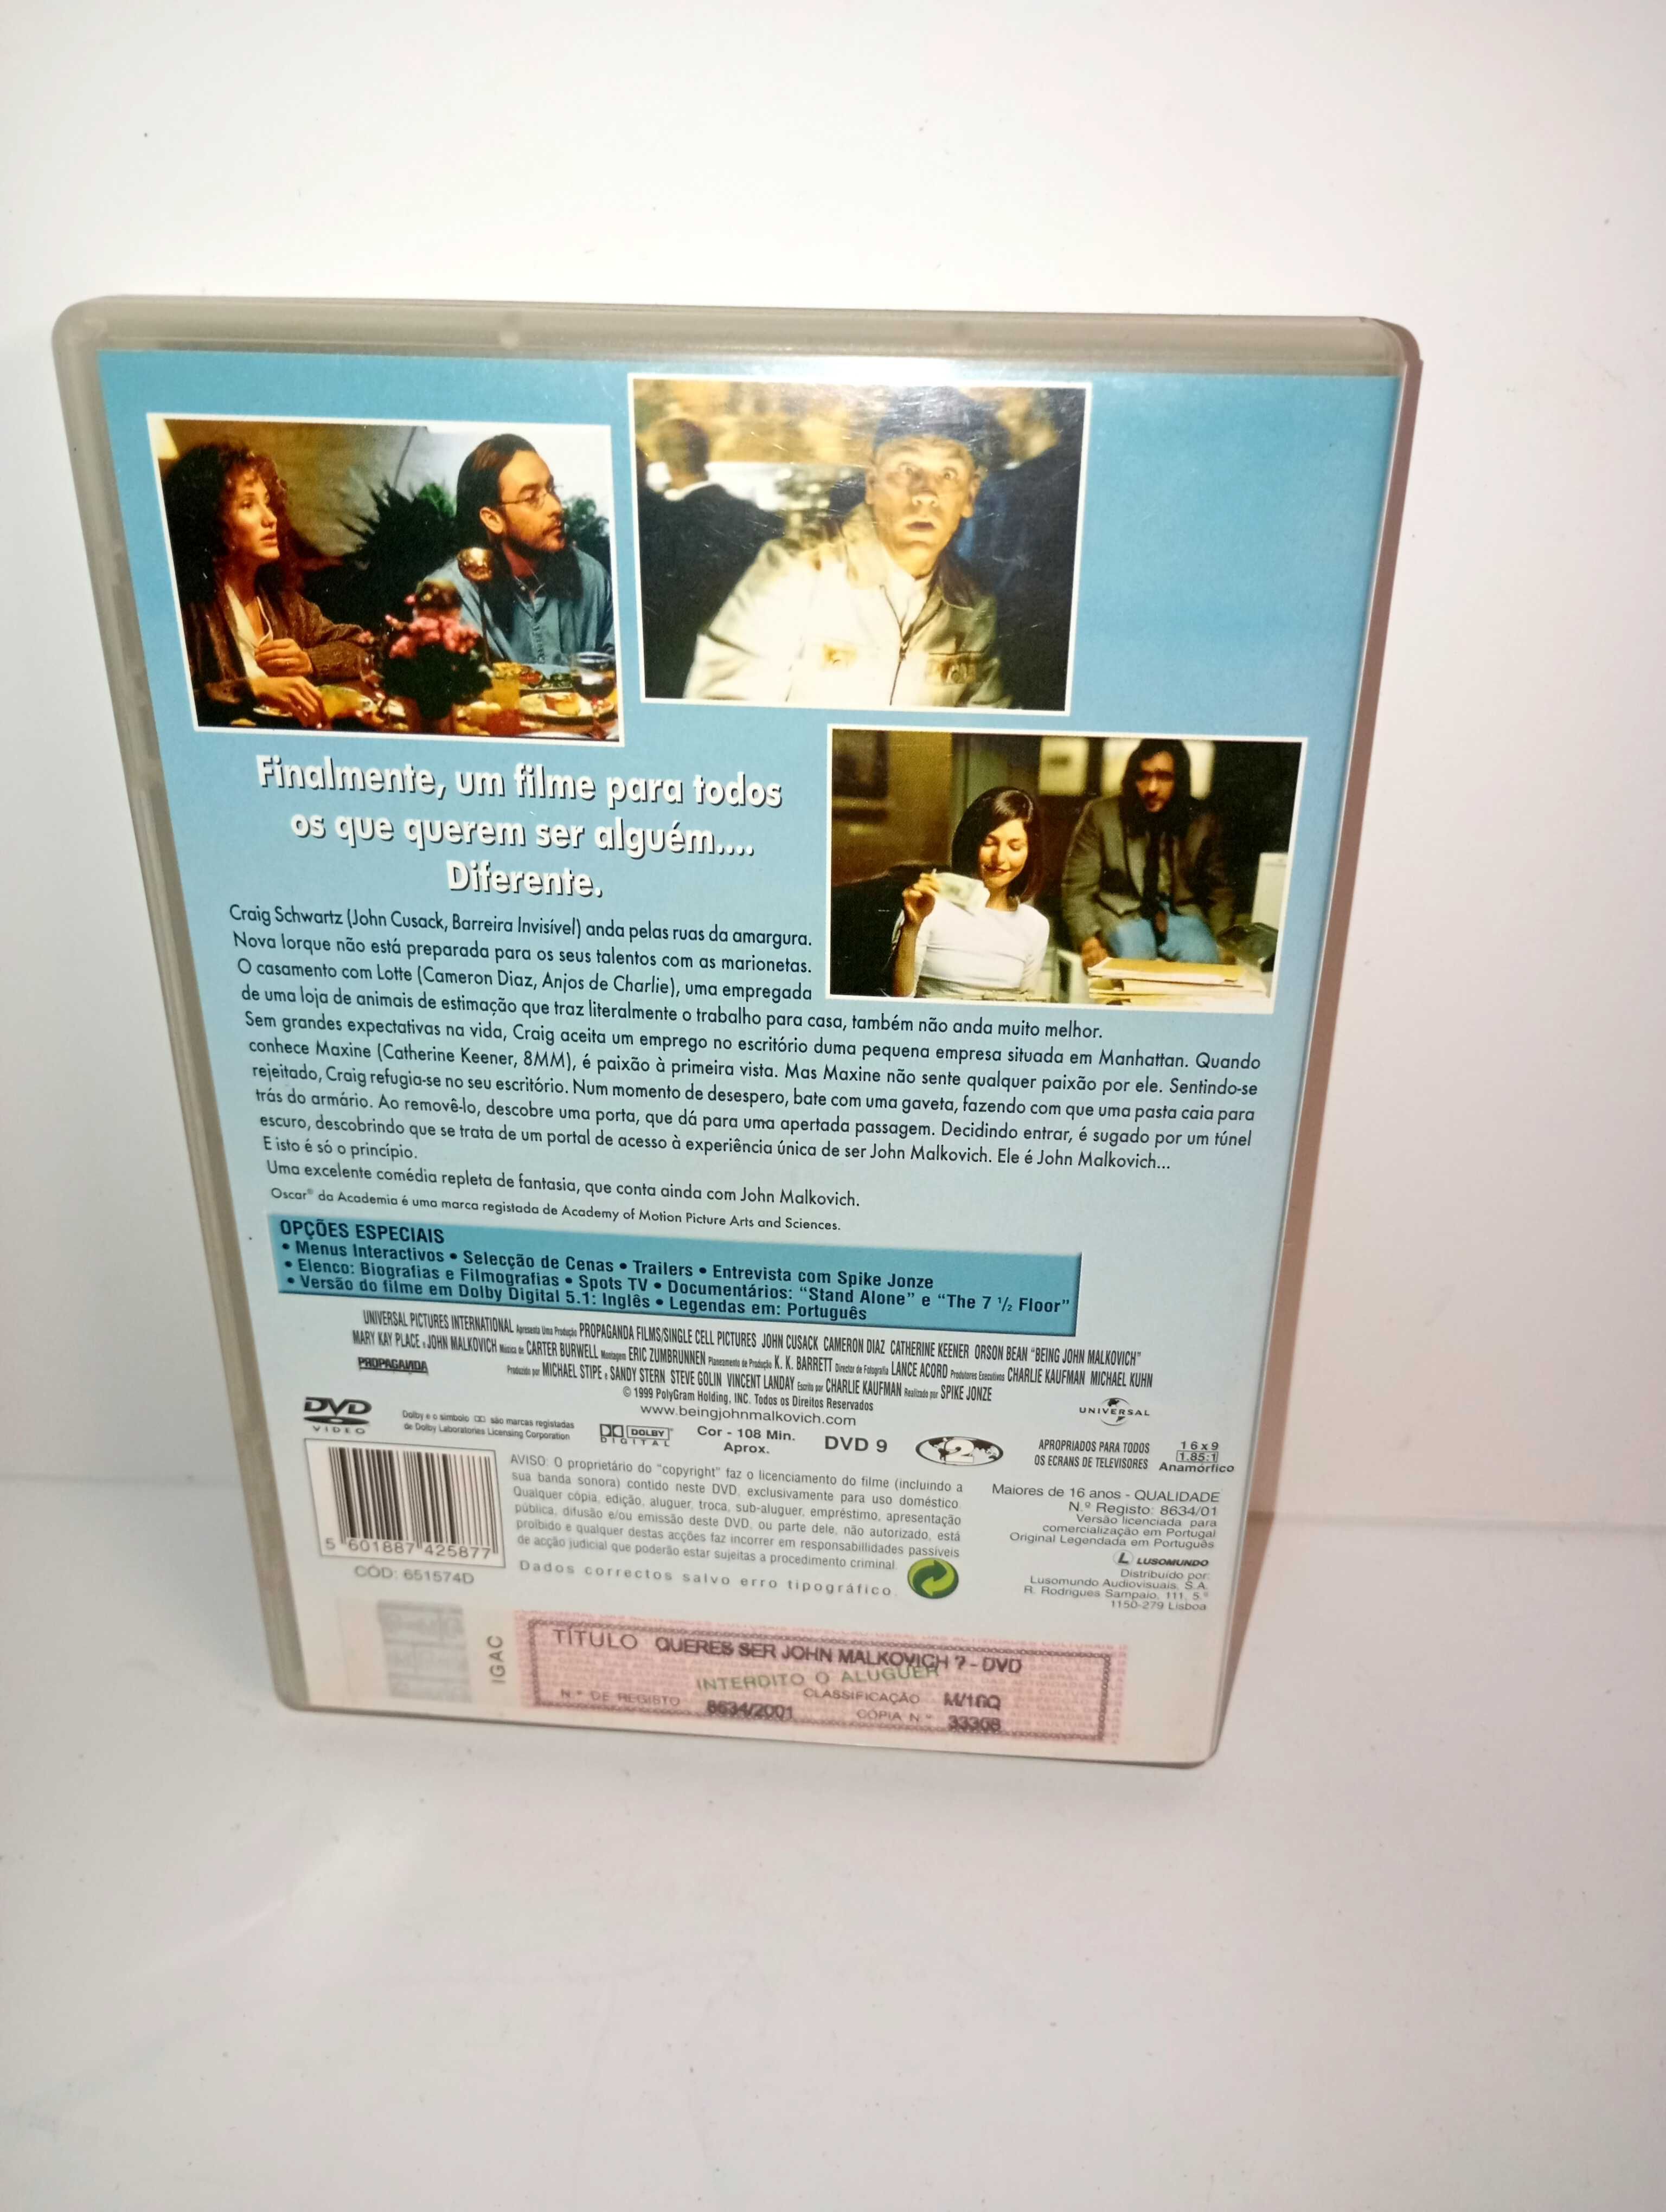 Queres ser John Malkovich? - DVD Original